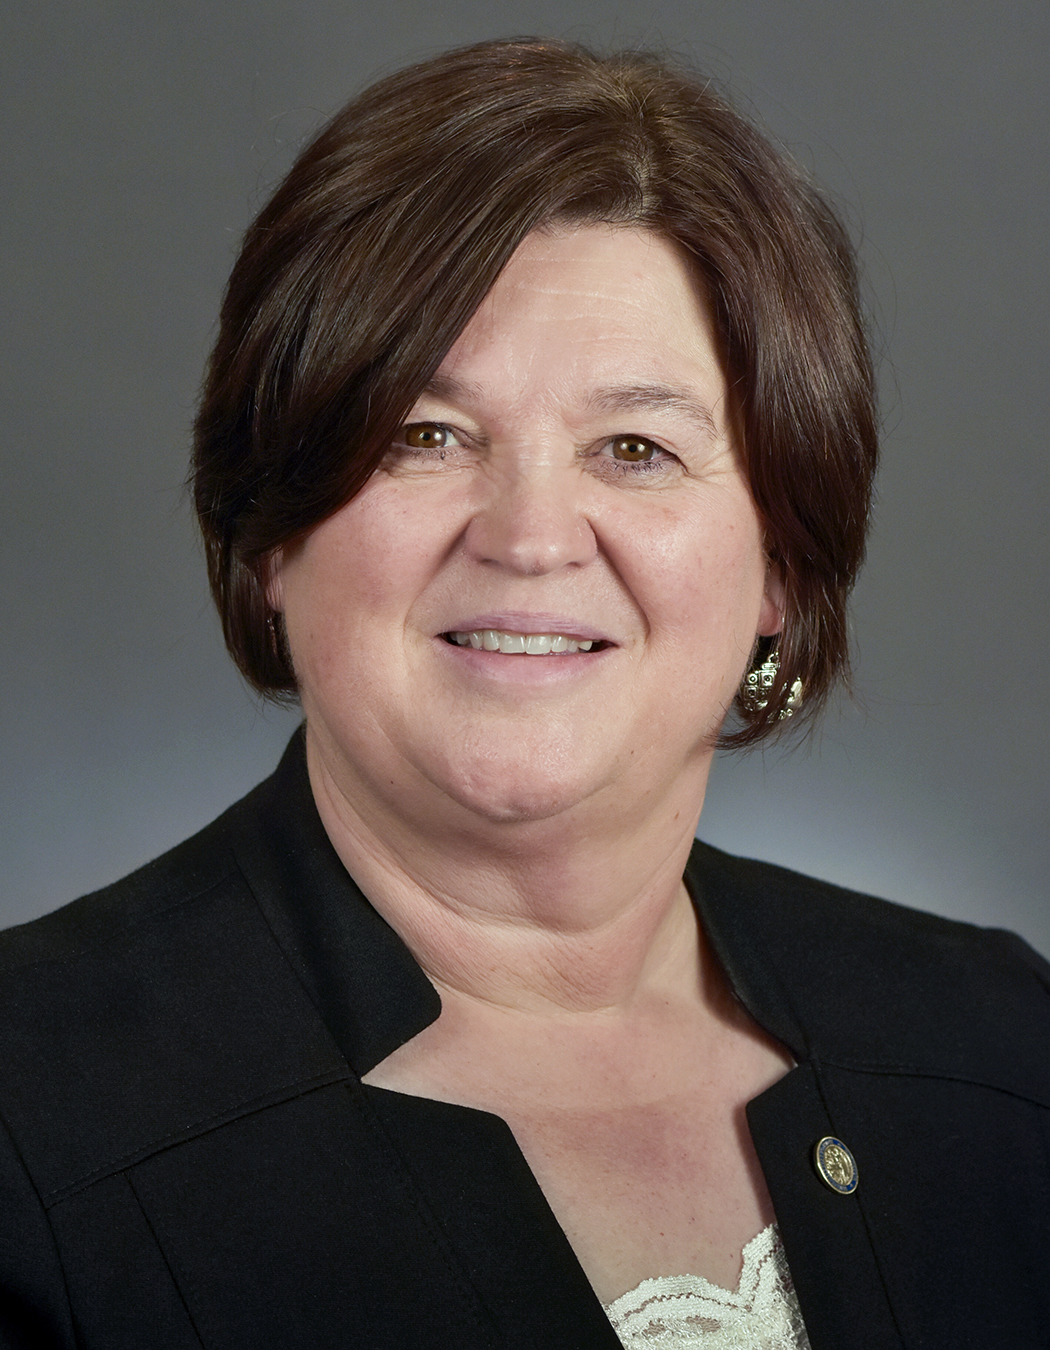 Representative Debra Kiel